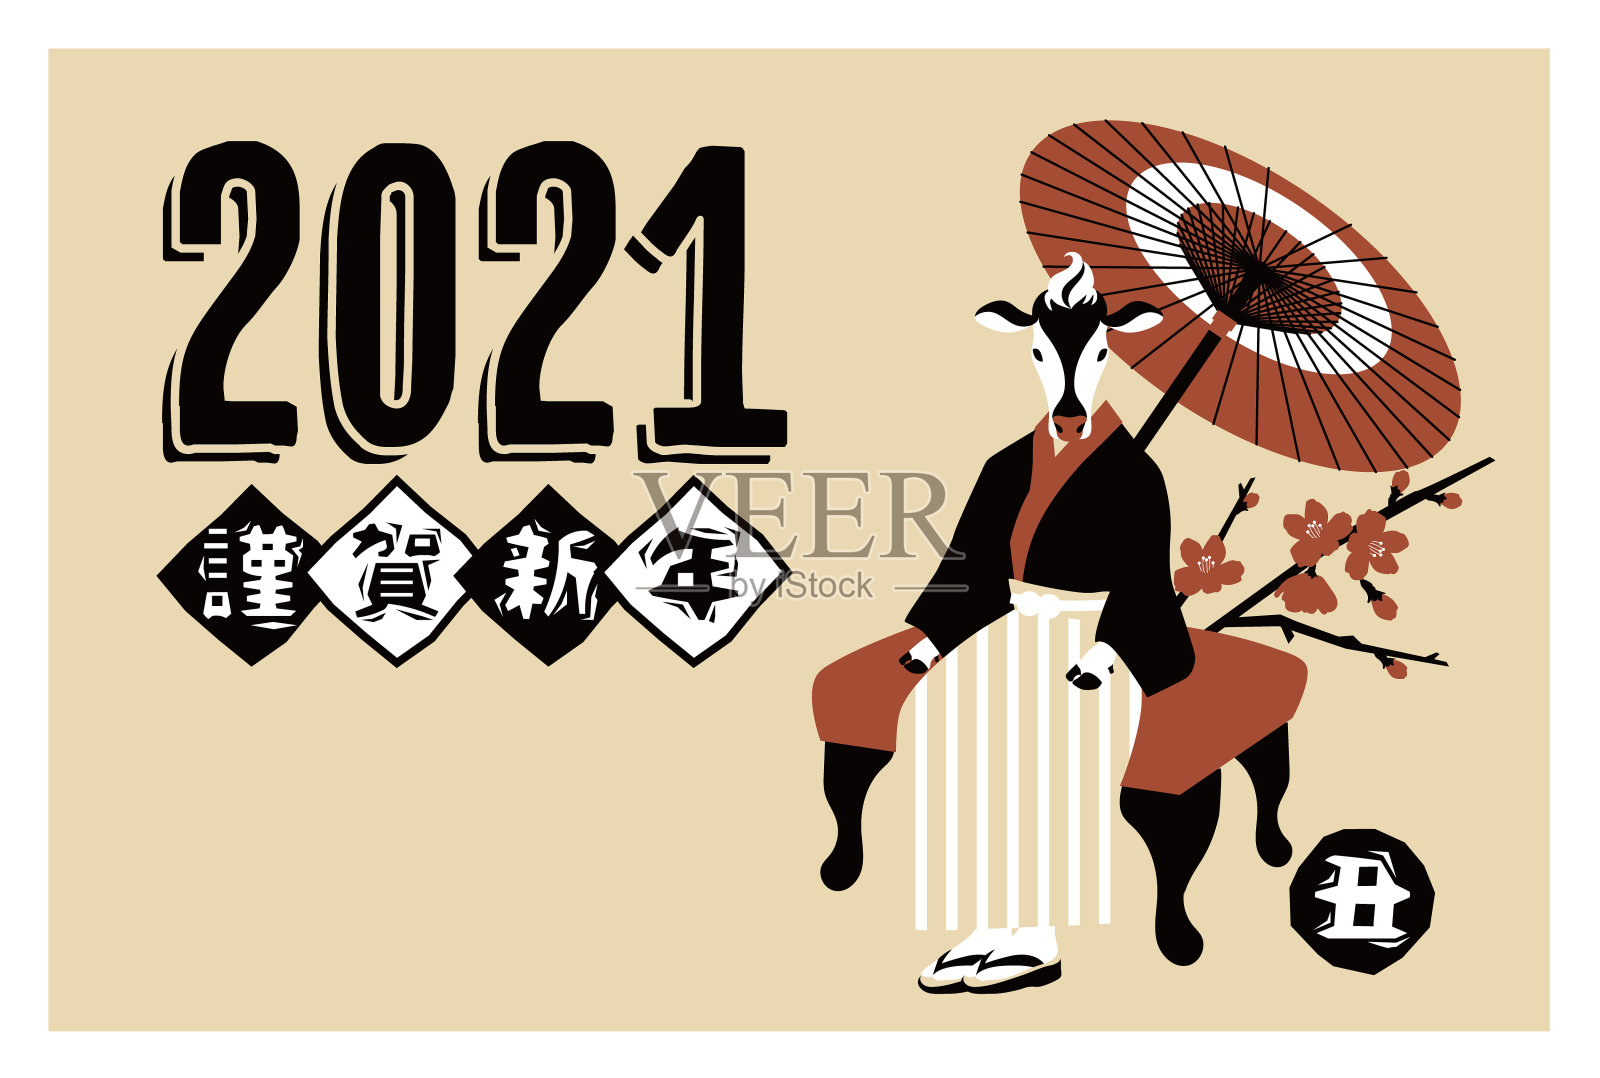 2021年牛贺年卡和日本服装矢量插画素材设计模板素材